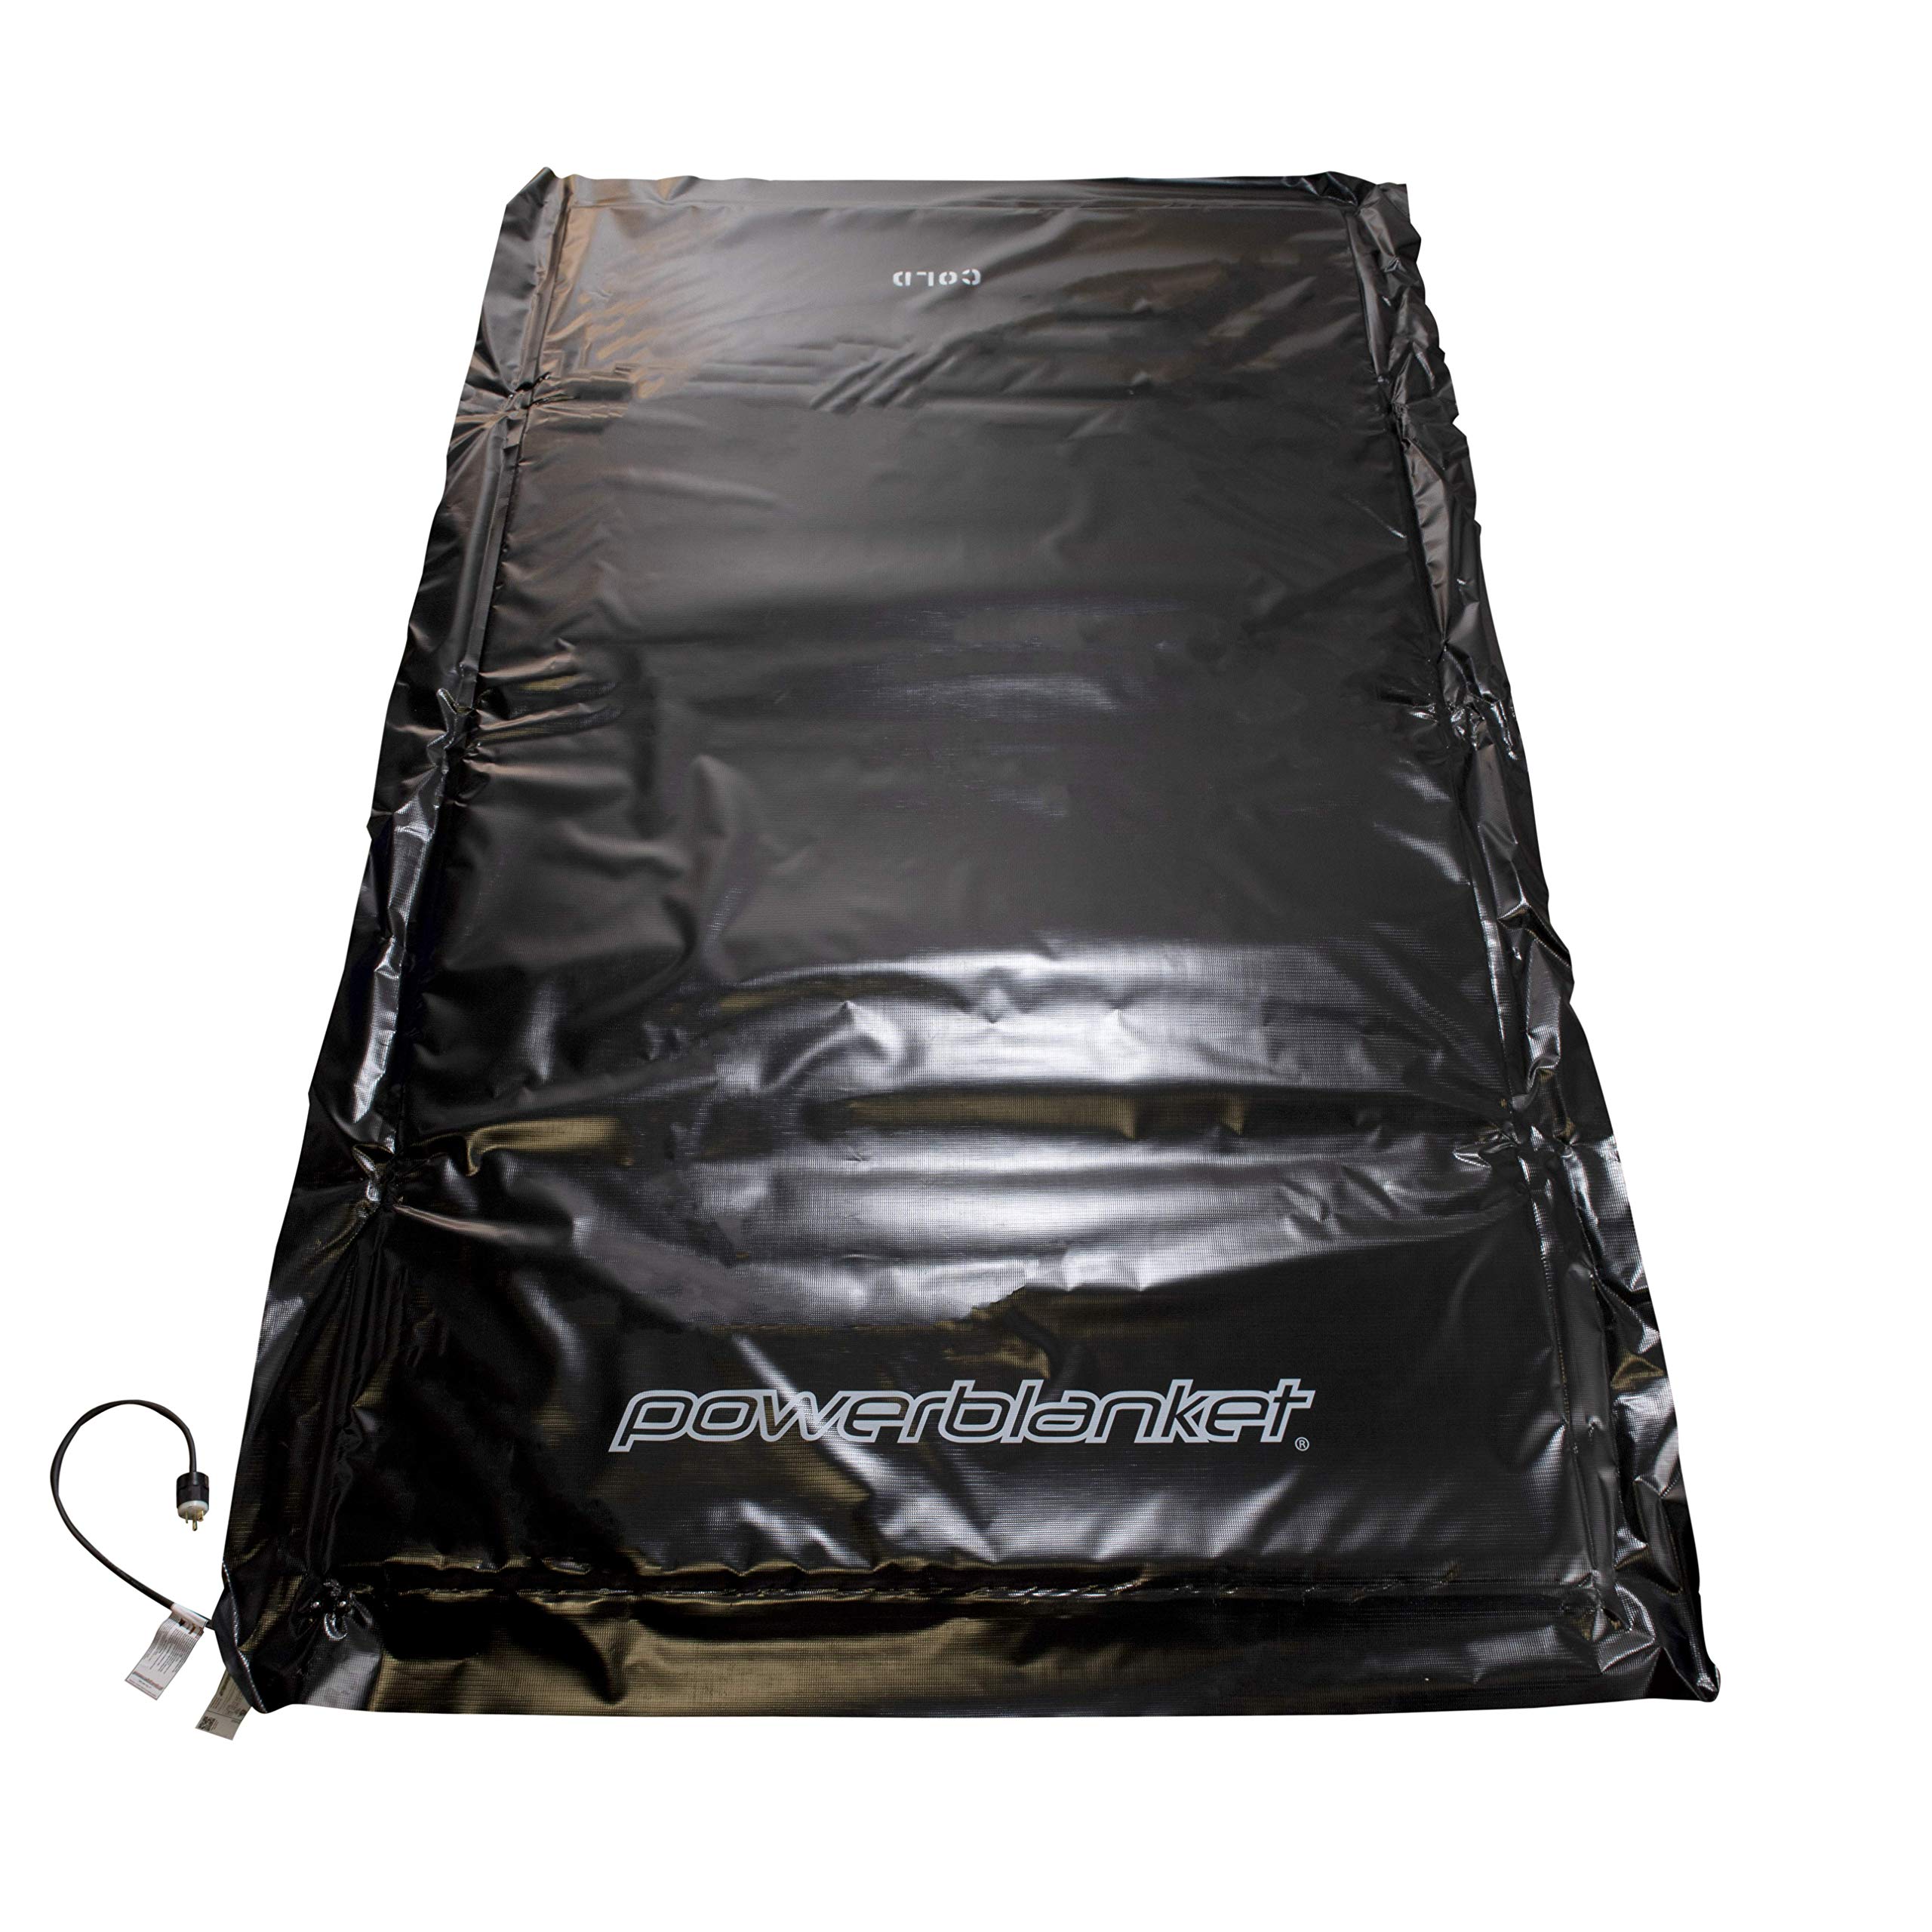 Powerblanket EH0304 Cobertor de descongelamento do solo - Dimensões aquecidas de 3' x 4' - Dimensões acabadas de 4' x 5'